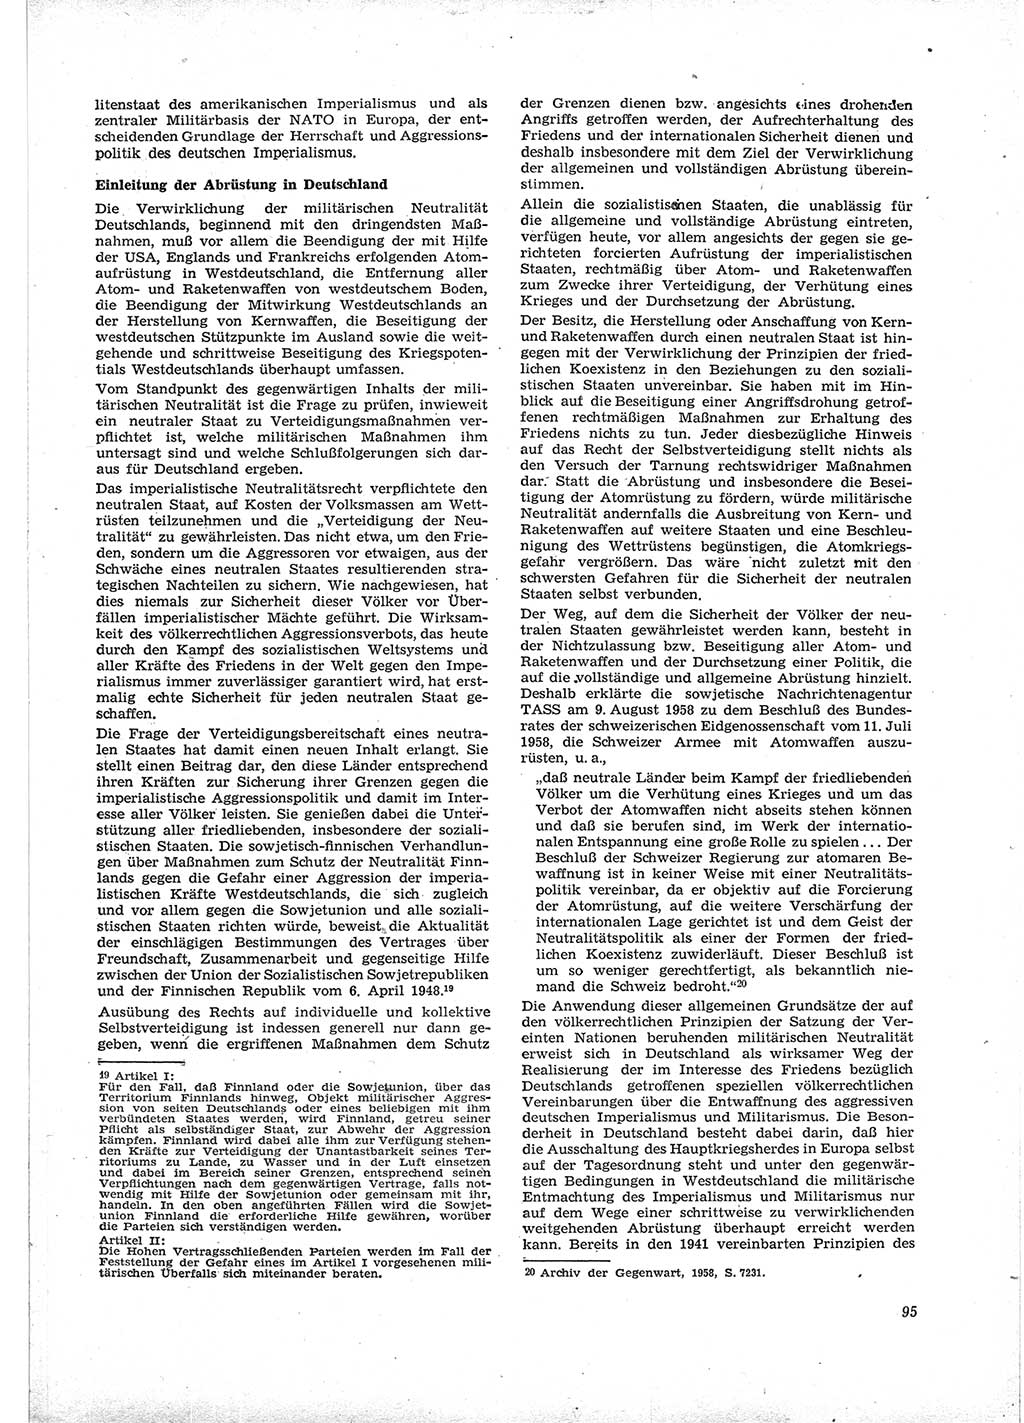 Neue Justiz (NJ), Zeitschrift für Recht und Rechtswissenschaft [Deutsche Demokratische Republik (DDR)], 16. Jahrgang 1962, Seite 95 (NJ DDR 1962, S. 95)